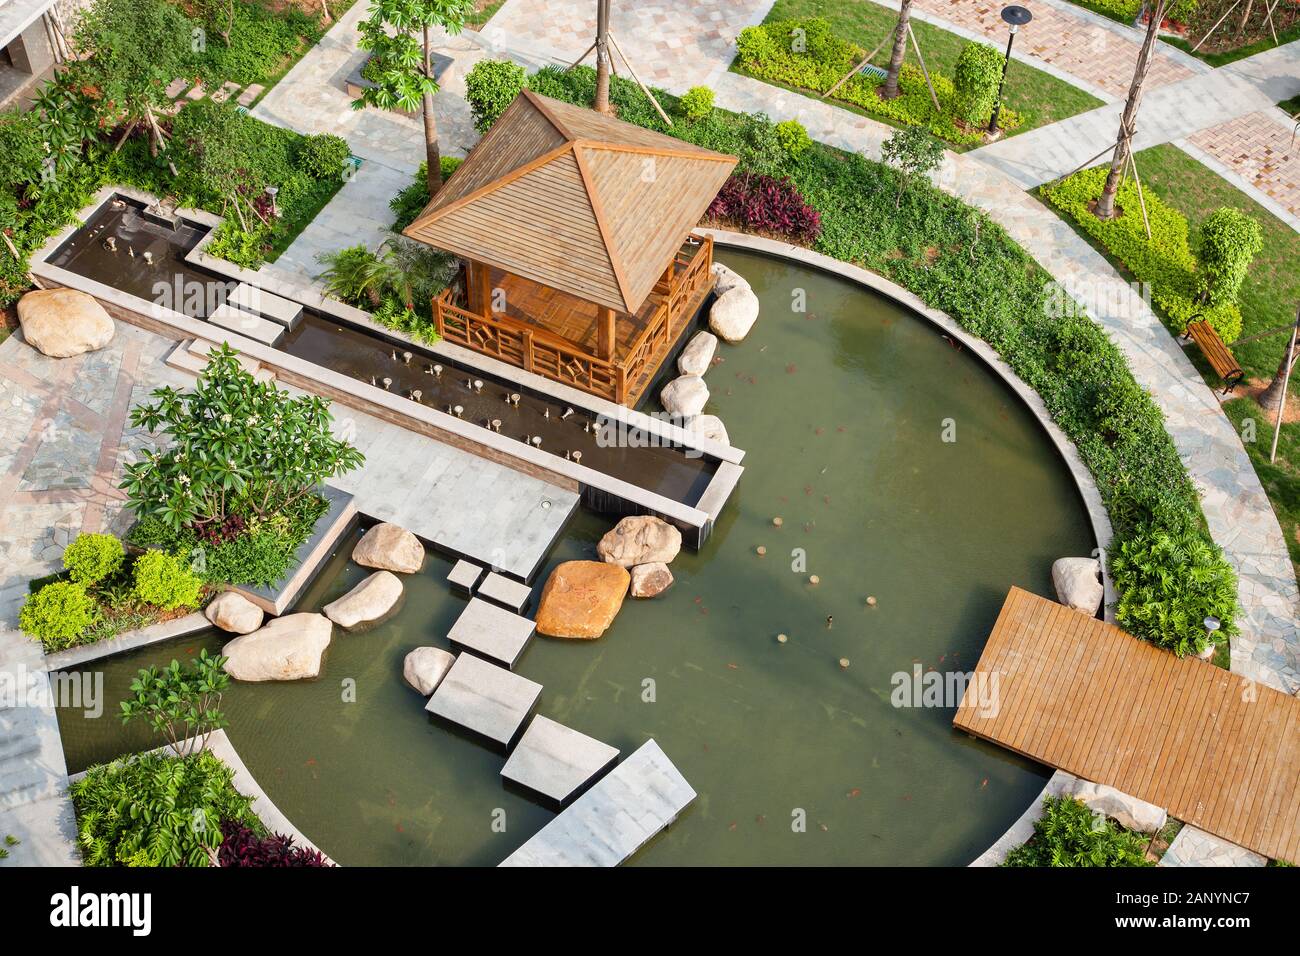 Maqueta de una casa con jardin y piscina 